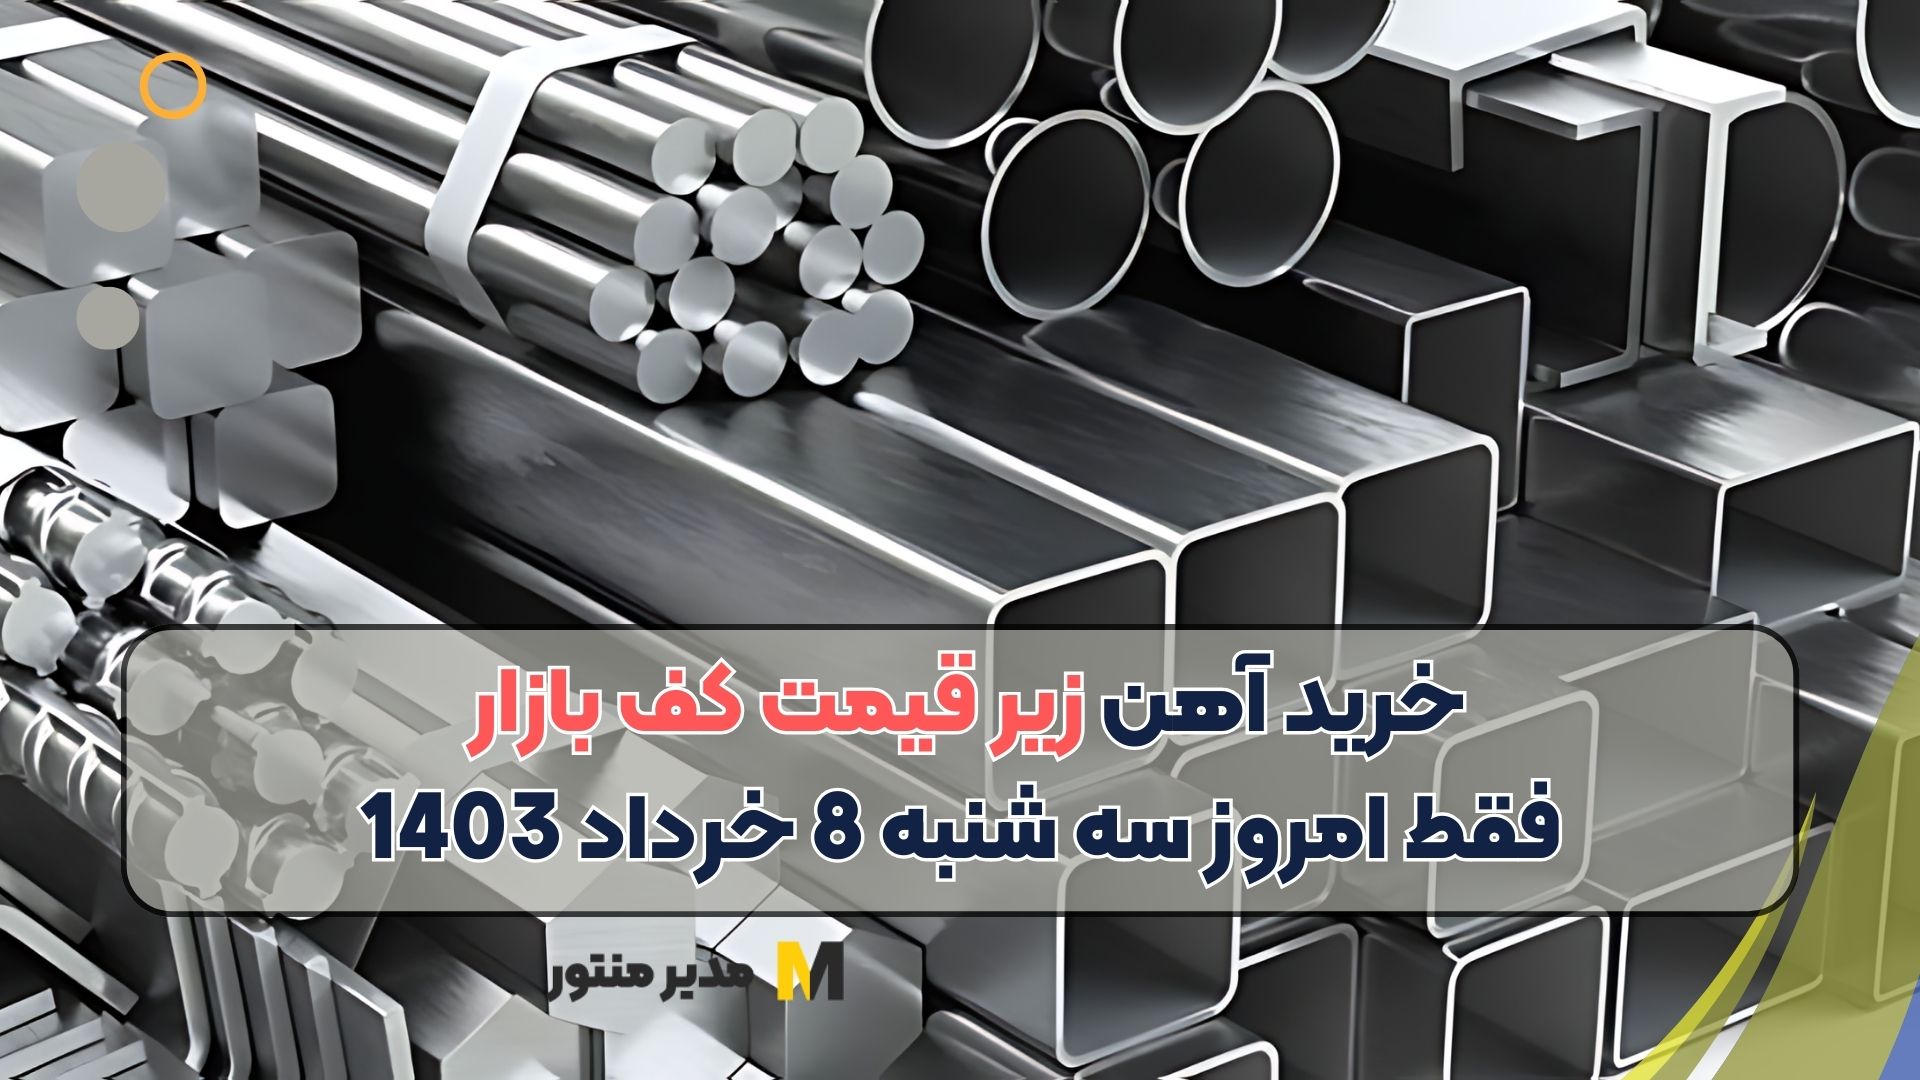 خرید آهن زیر قیمت کف بازار فقط امروز سه شنبه 8 خرداد 1403